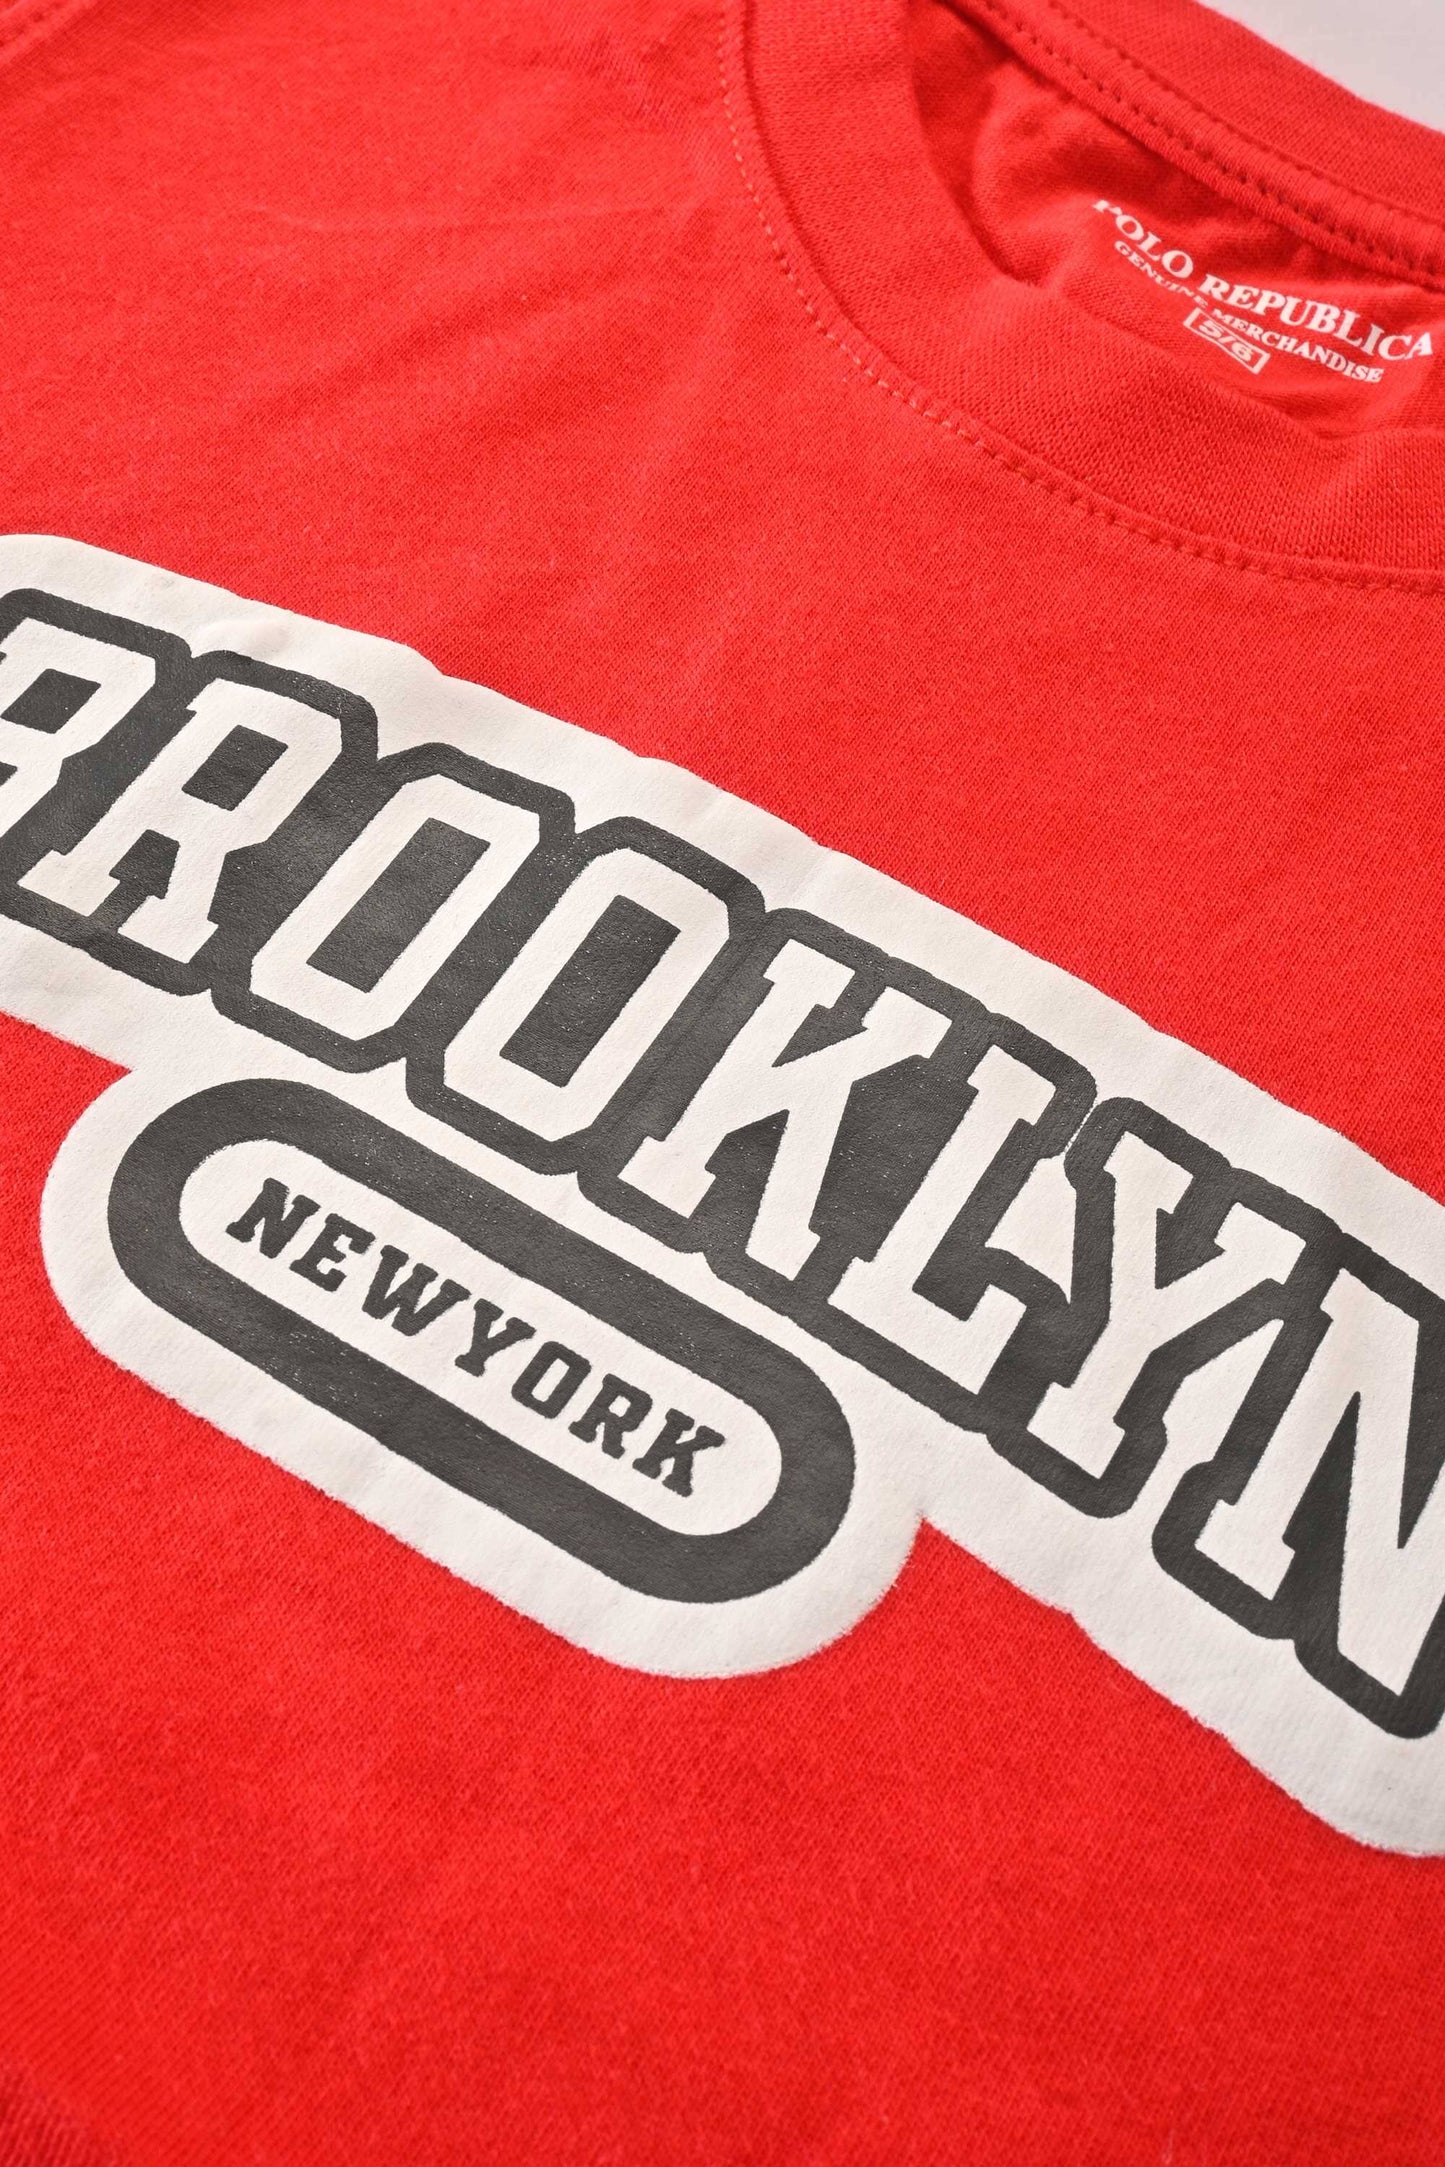 Polo Republica Boy's Brooklyn Newyork Printed Tee Shirt Boy's Tee Shirt Polo Republica 